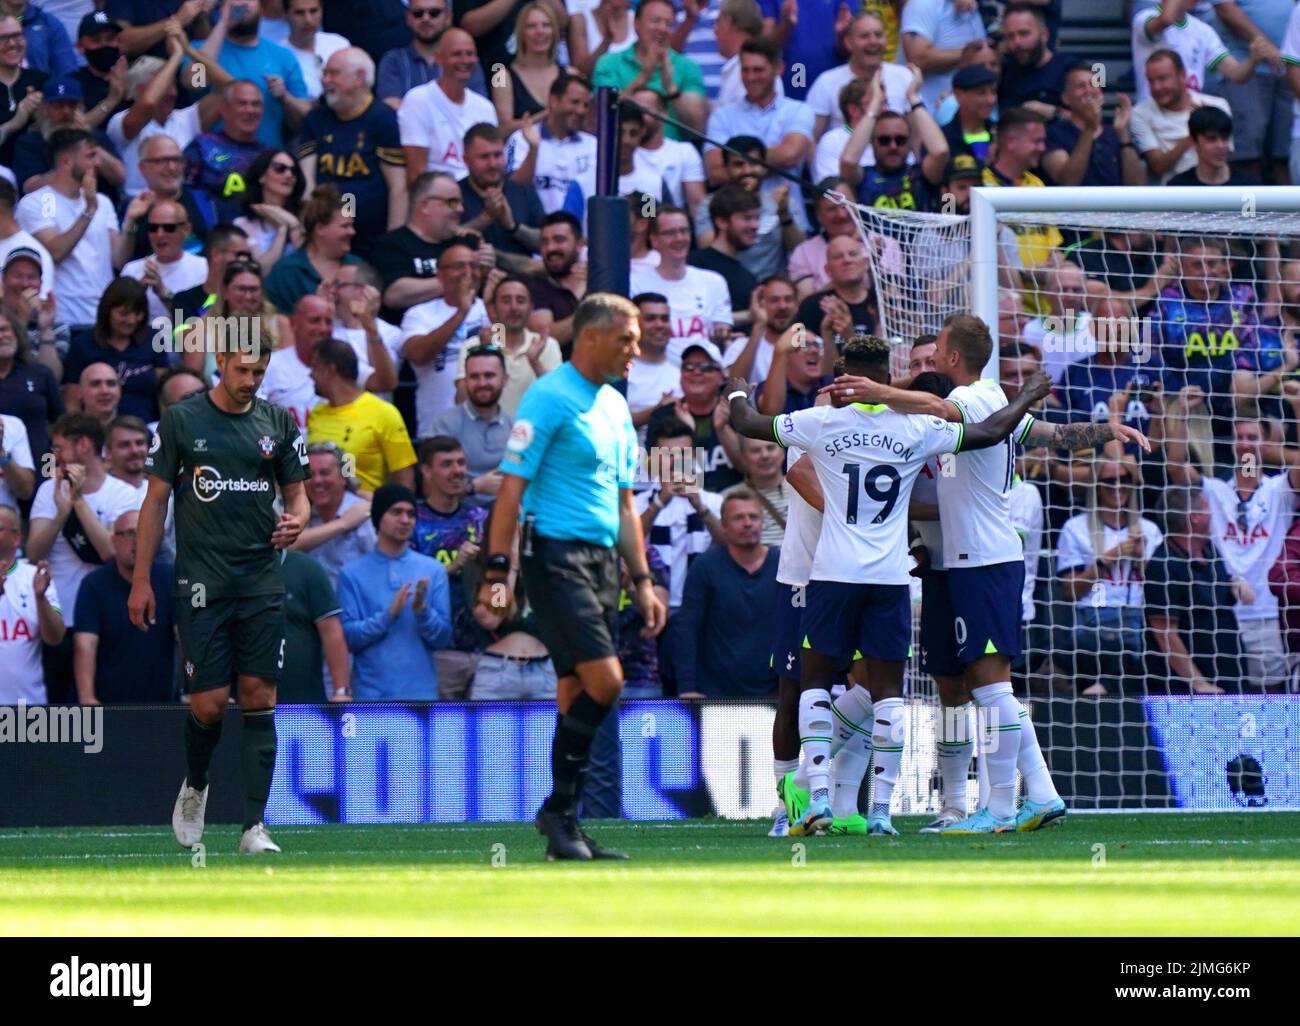 Los jugadores del Tottenham Hotspur celebran después de que Mohammed Salisu de Southampton (no en la foto) marque el tercer gol de su equipo con su propio gol, durante el partido de la Premier League en el Tottenham Hotspur Stadium, Londres. Fecha de la foto: Sábado 6 de agosto de 2022. Foto de stock